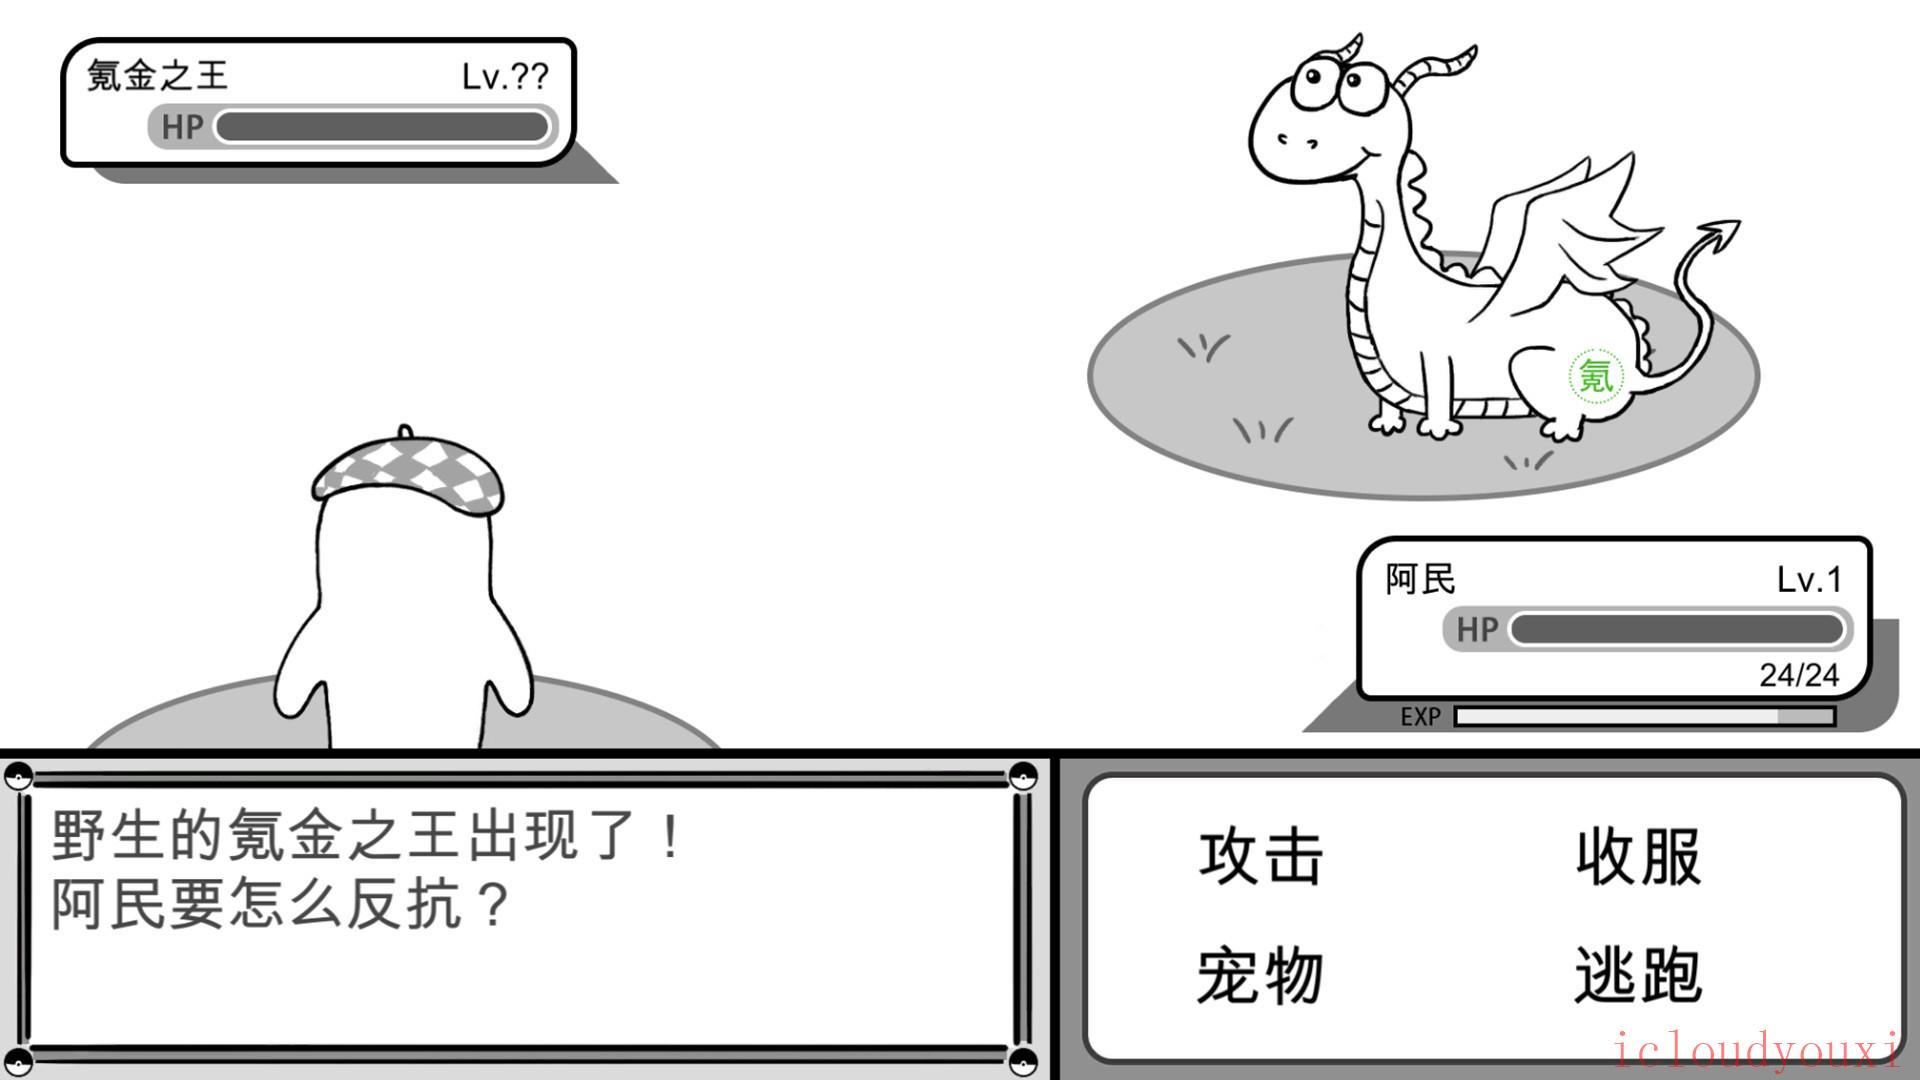 没有人知道的大冒险简体中文云游戏截图2